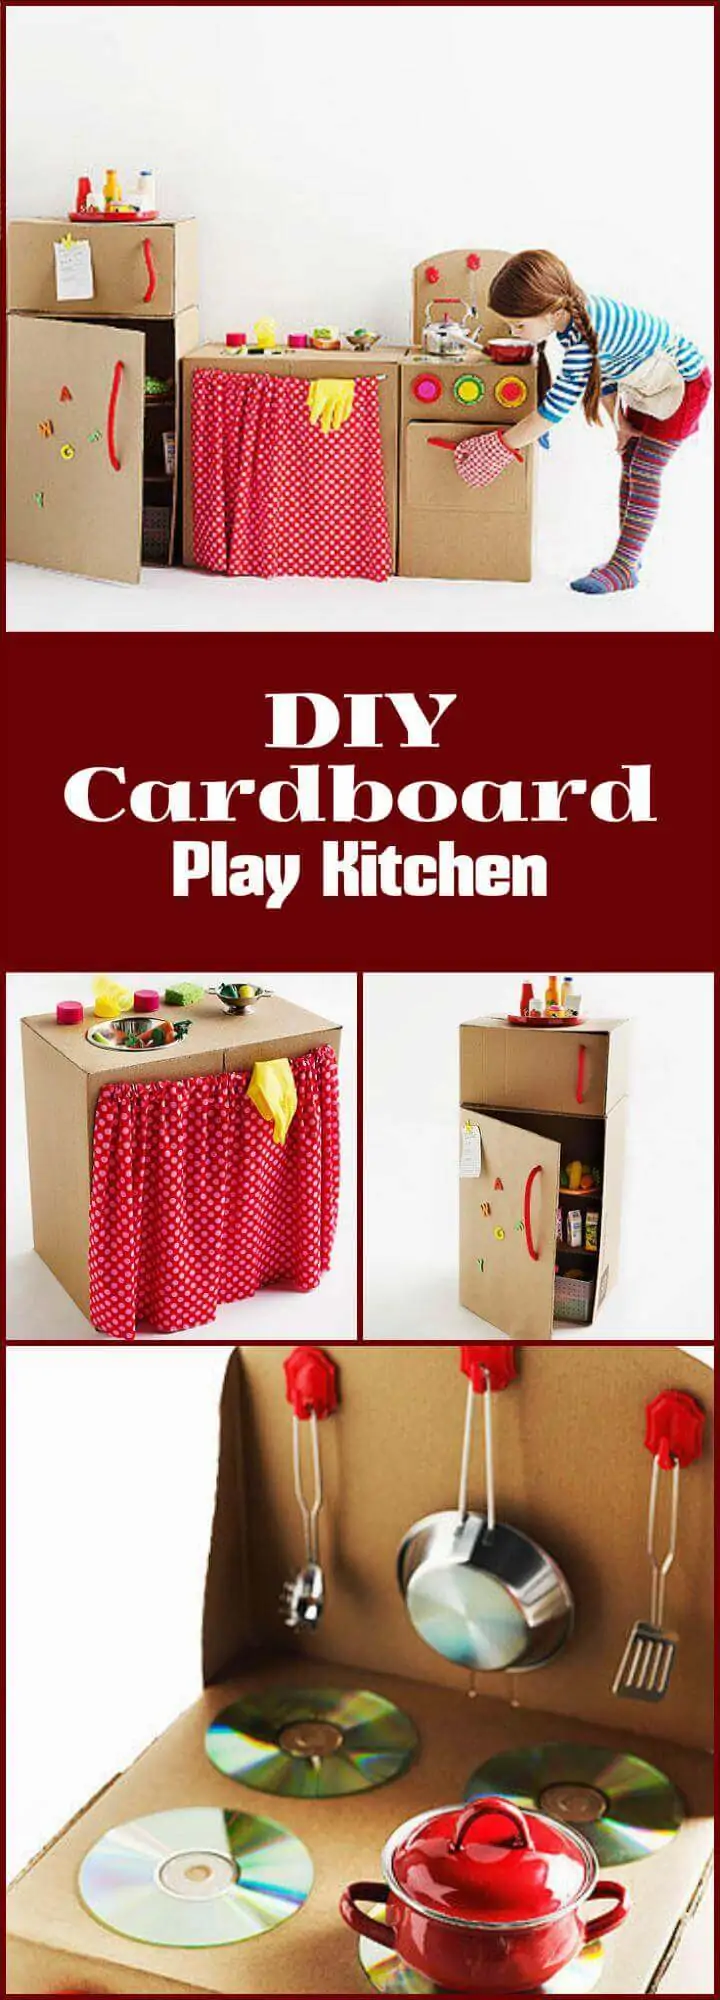 DIY hermosa cocina de cartón para jugar